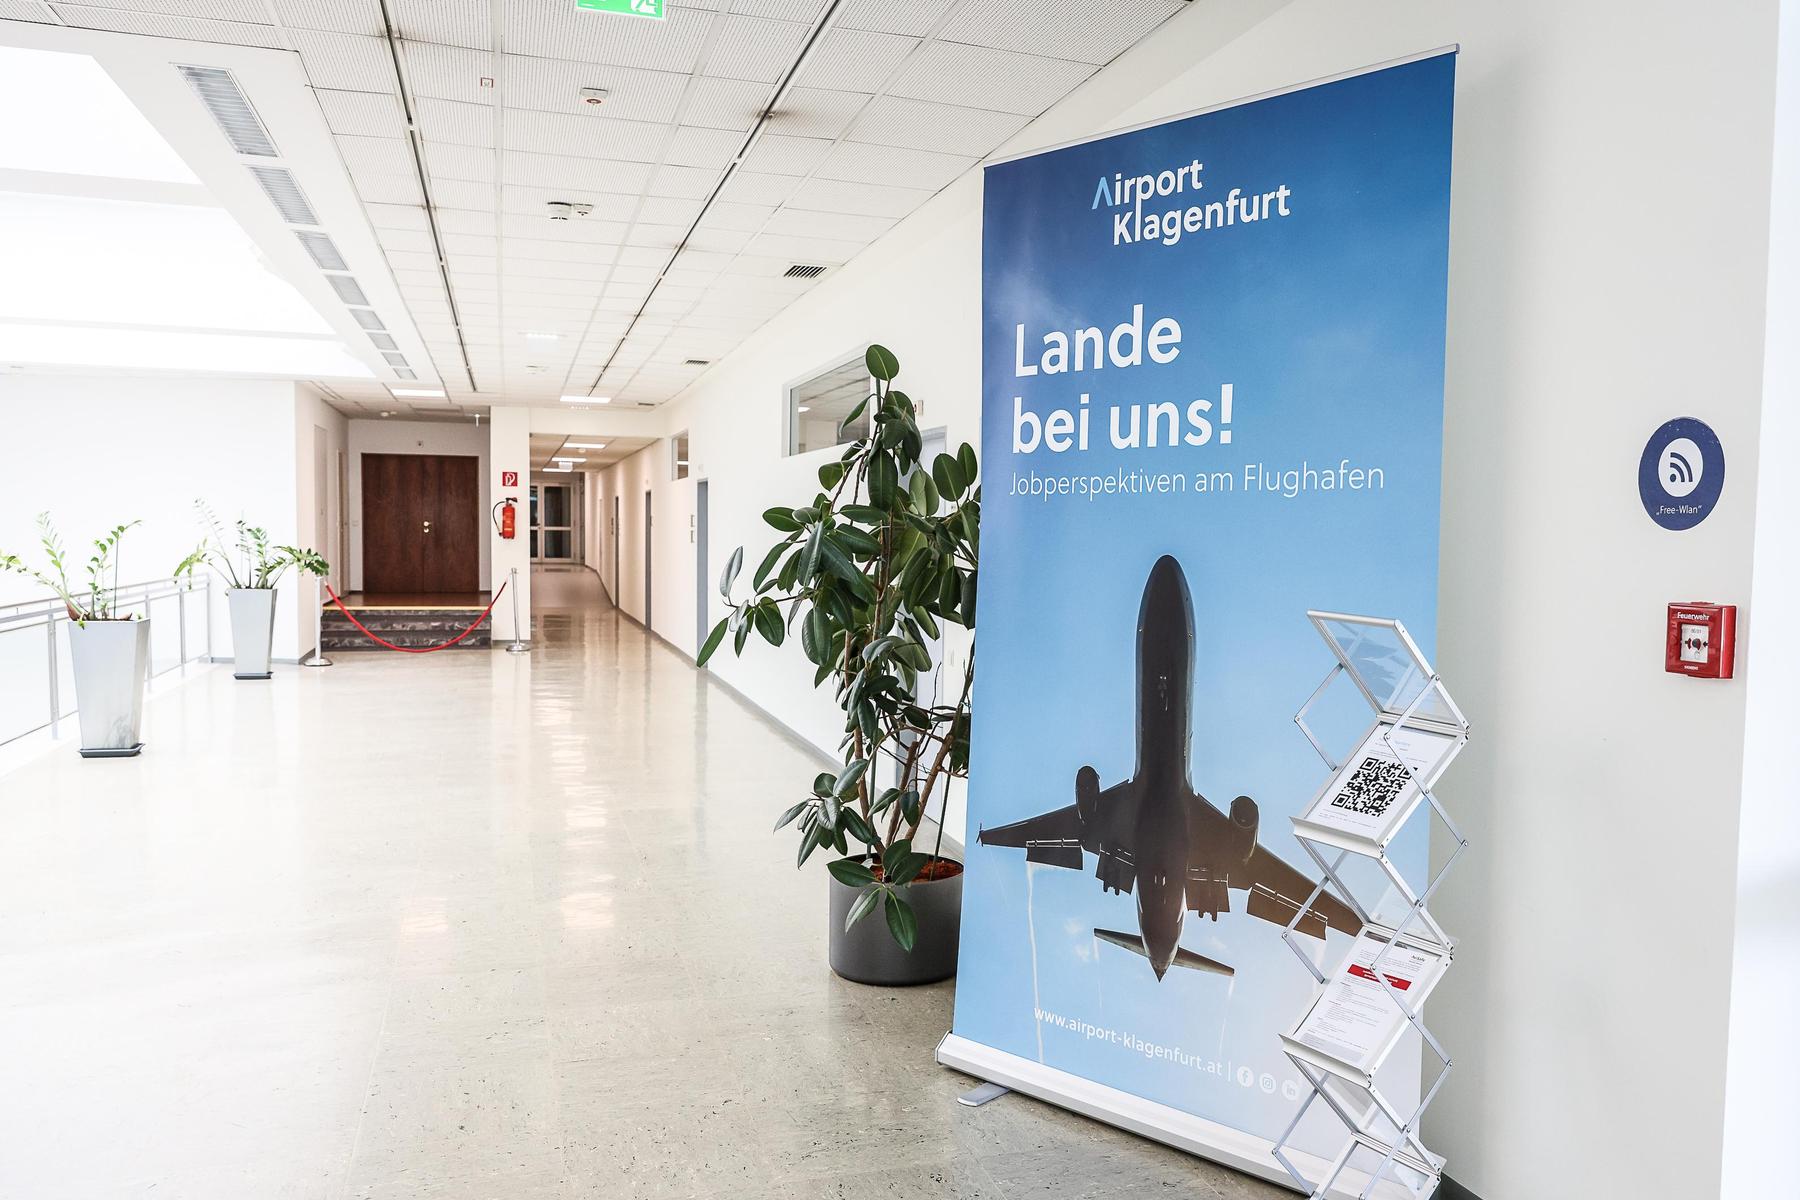 Belebung durch neue Charter: Flüge ab Klagenfurt nach Skandinavien geplant